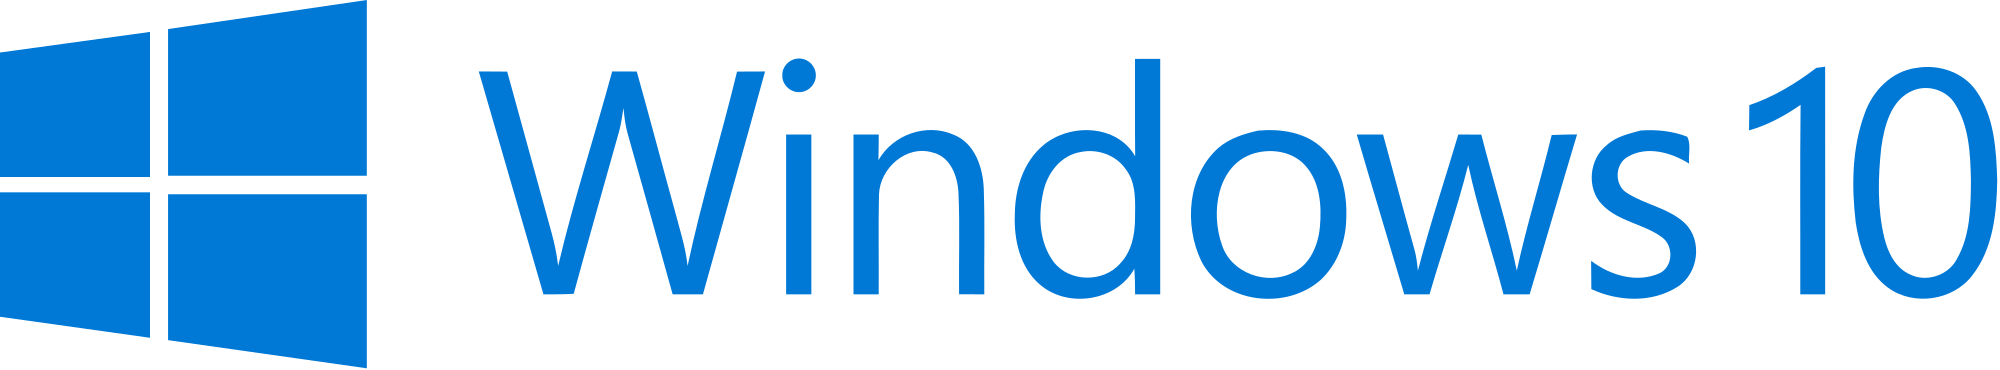 Windows 10 Logo PNG